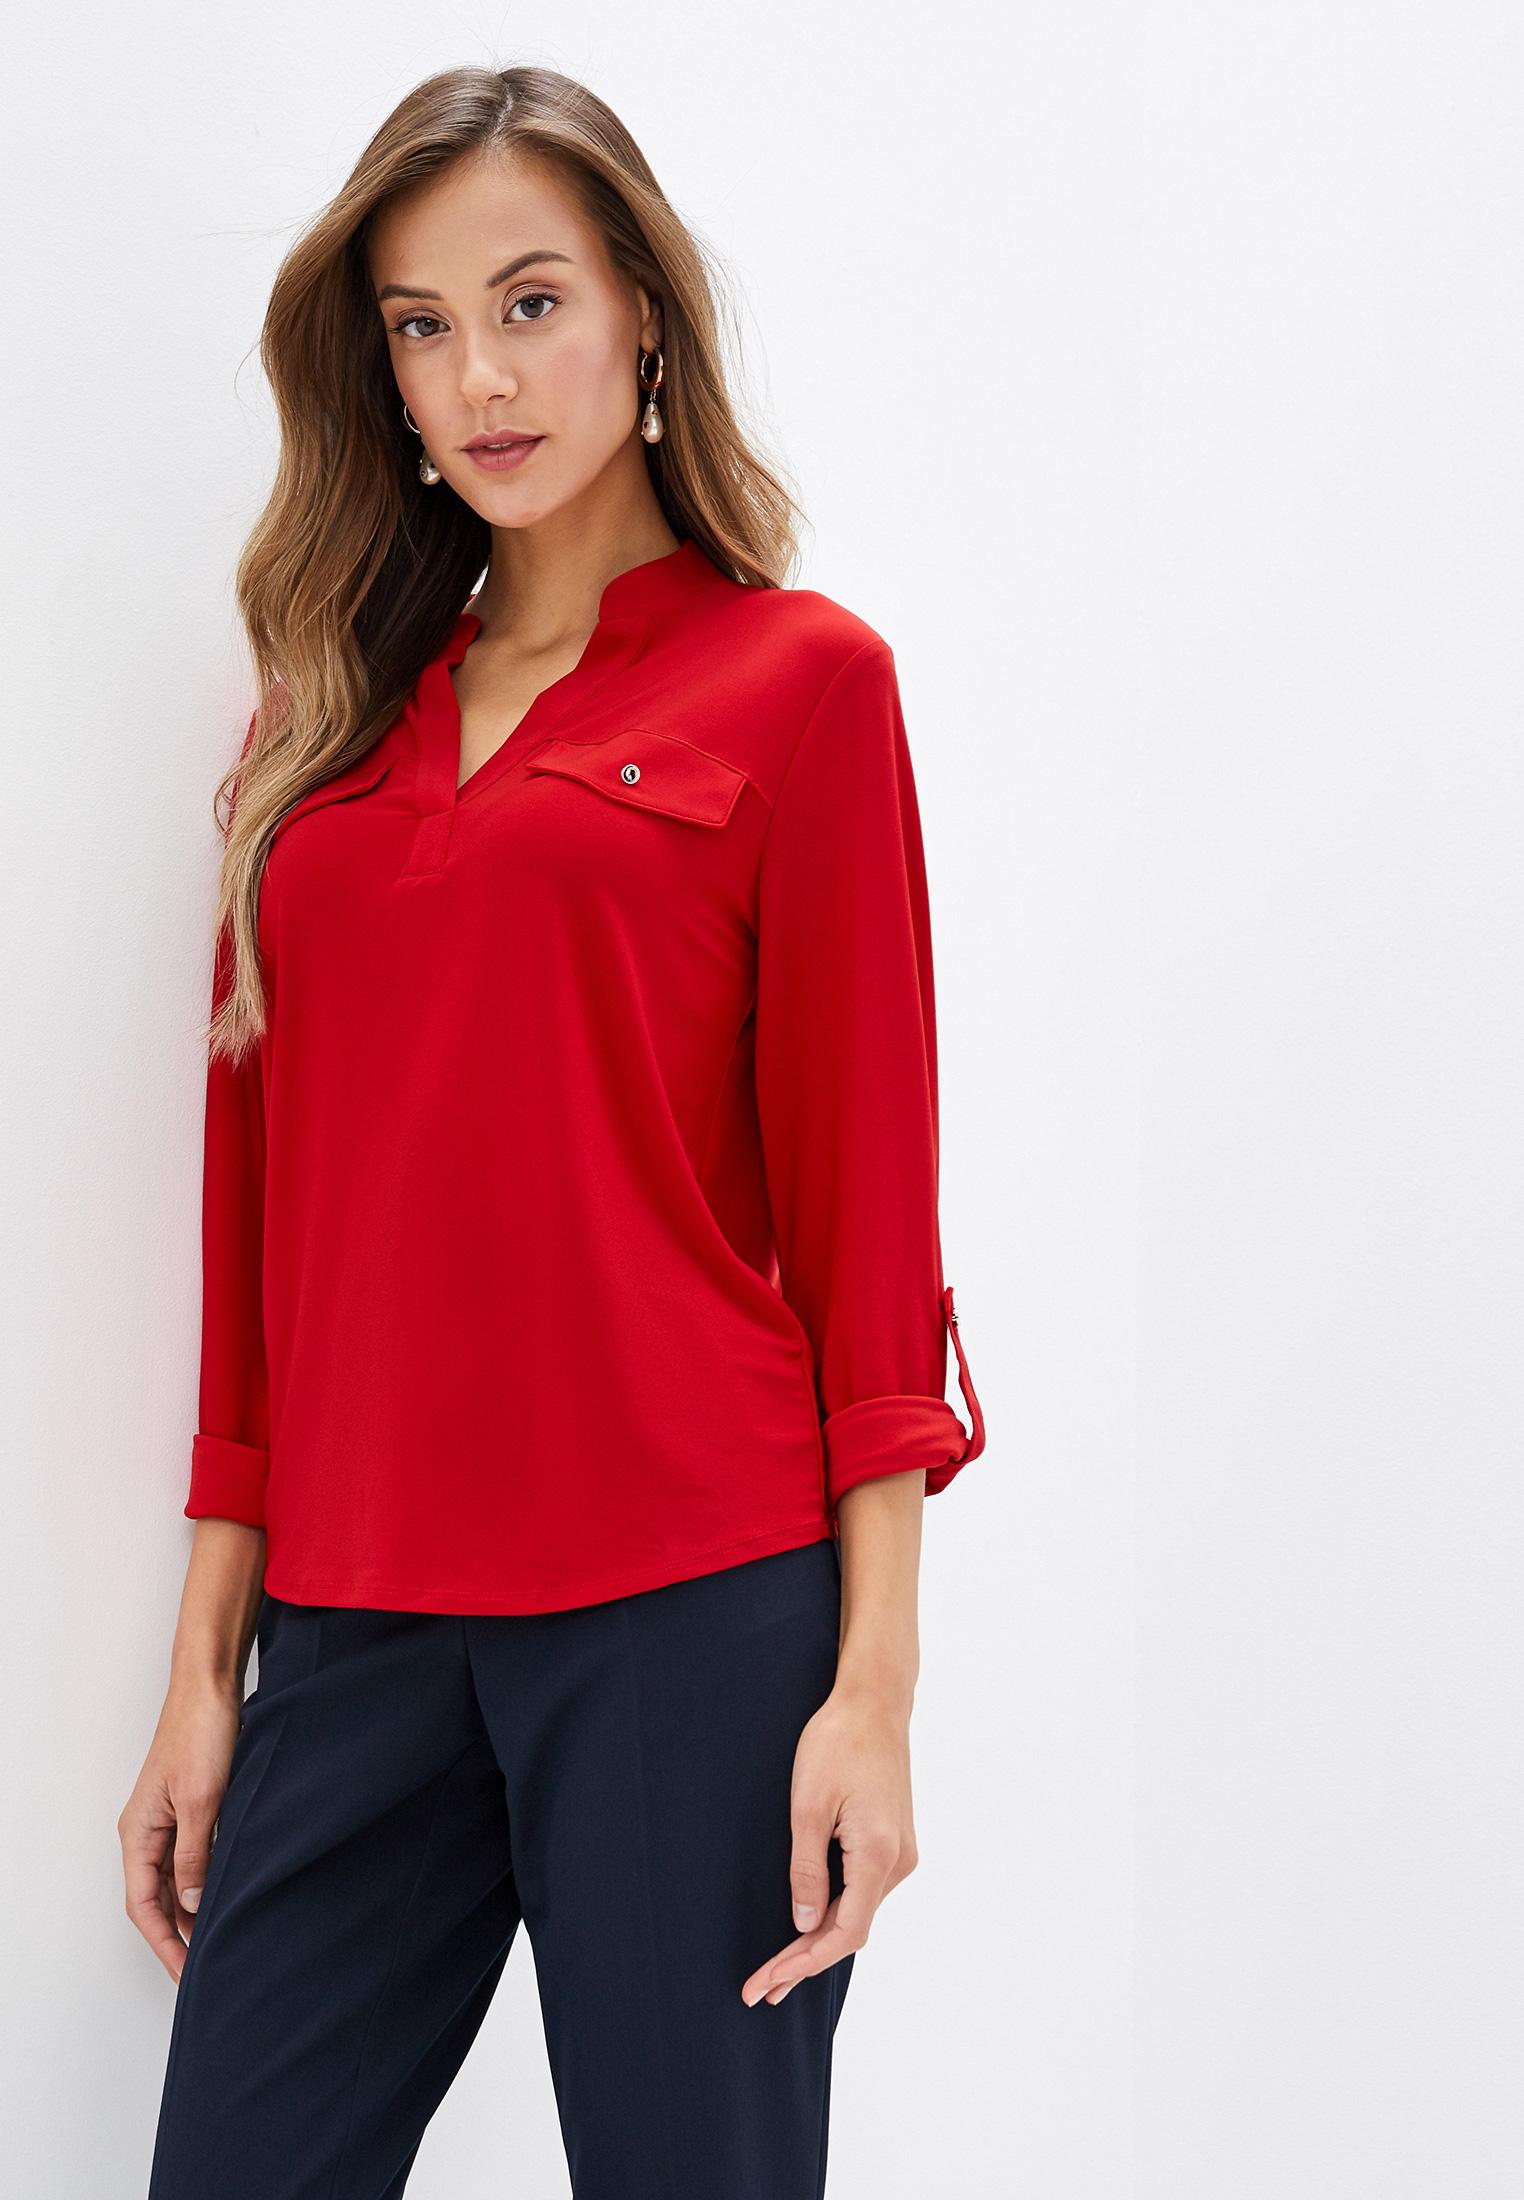 Красные блузки женская. Дороти Перкинс блуза красная. Красная блузка. Блуза женская красная. Красные кофточки женские.